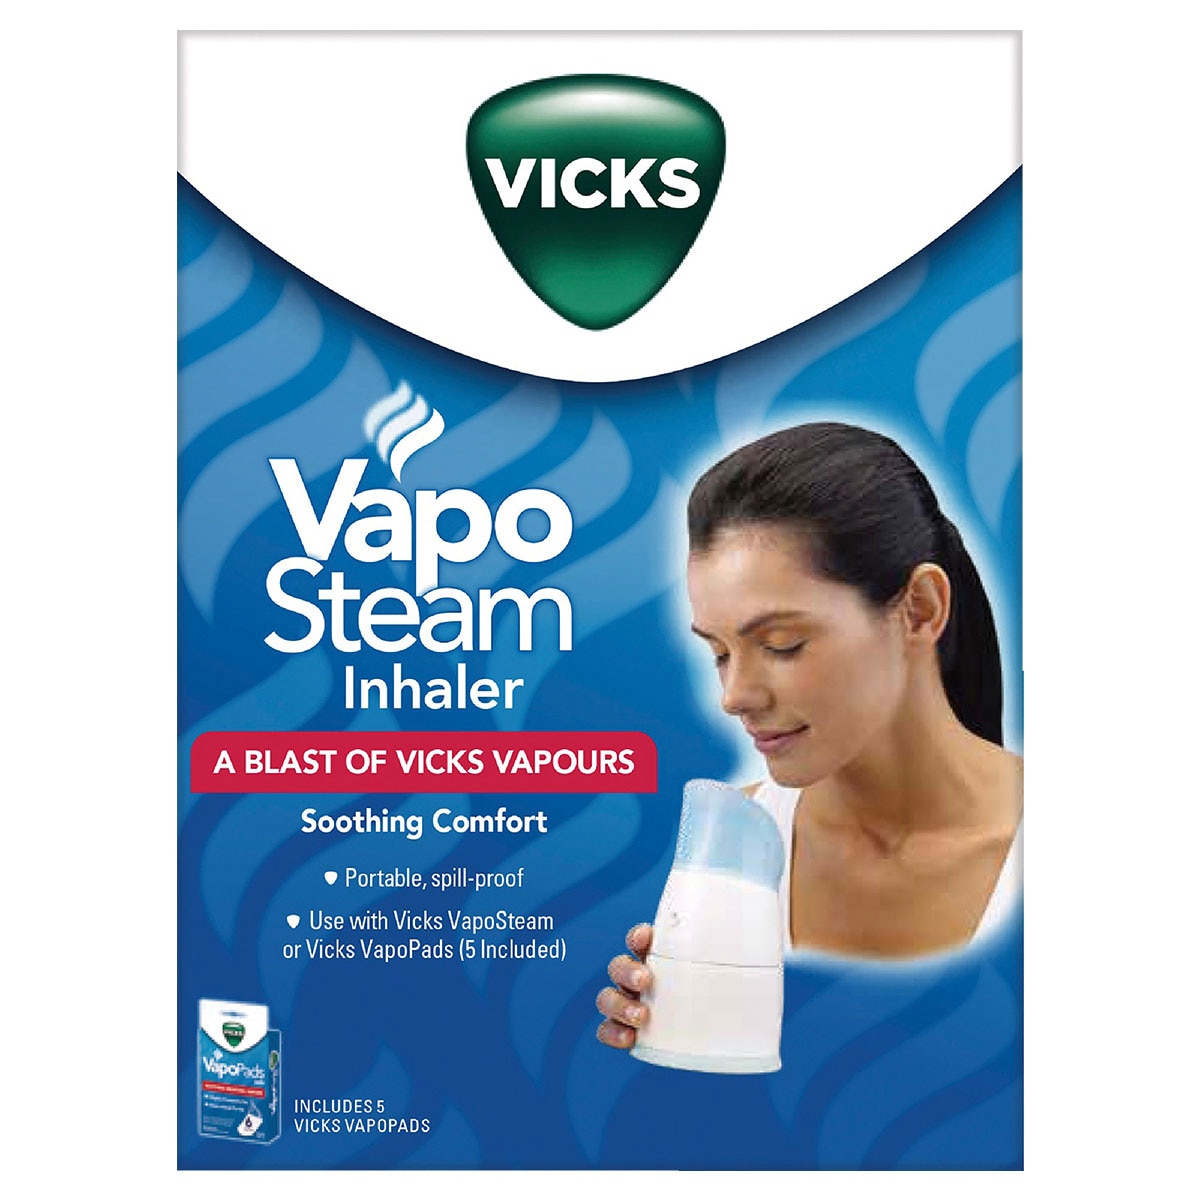 Vicks VapoSteam Inhaler V1300